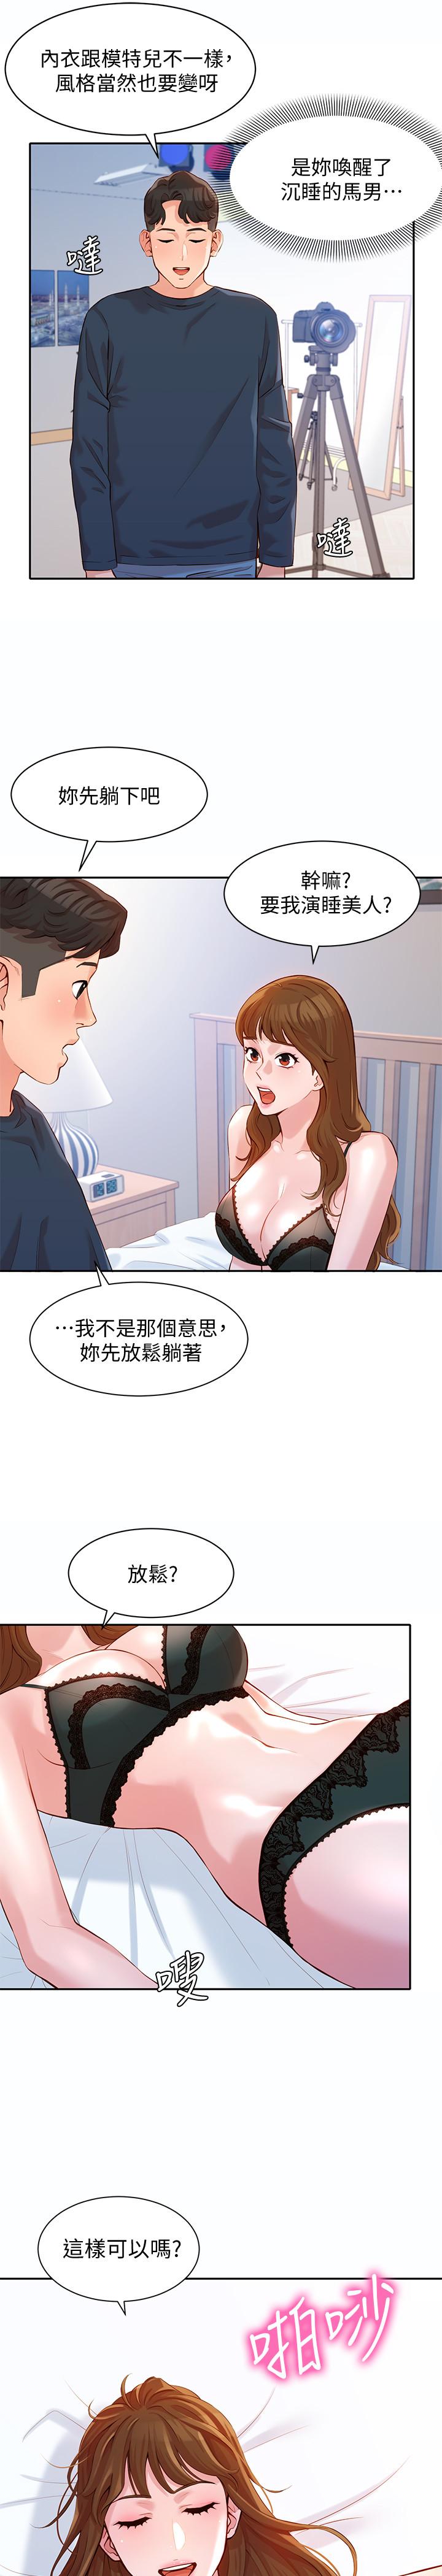 韩国污漫画 女神寫真 第9话-被看光光的私密部位 23